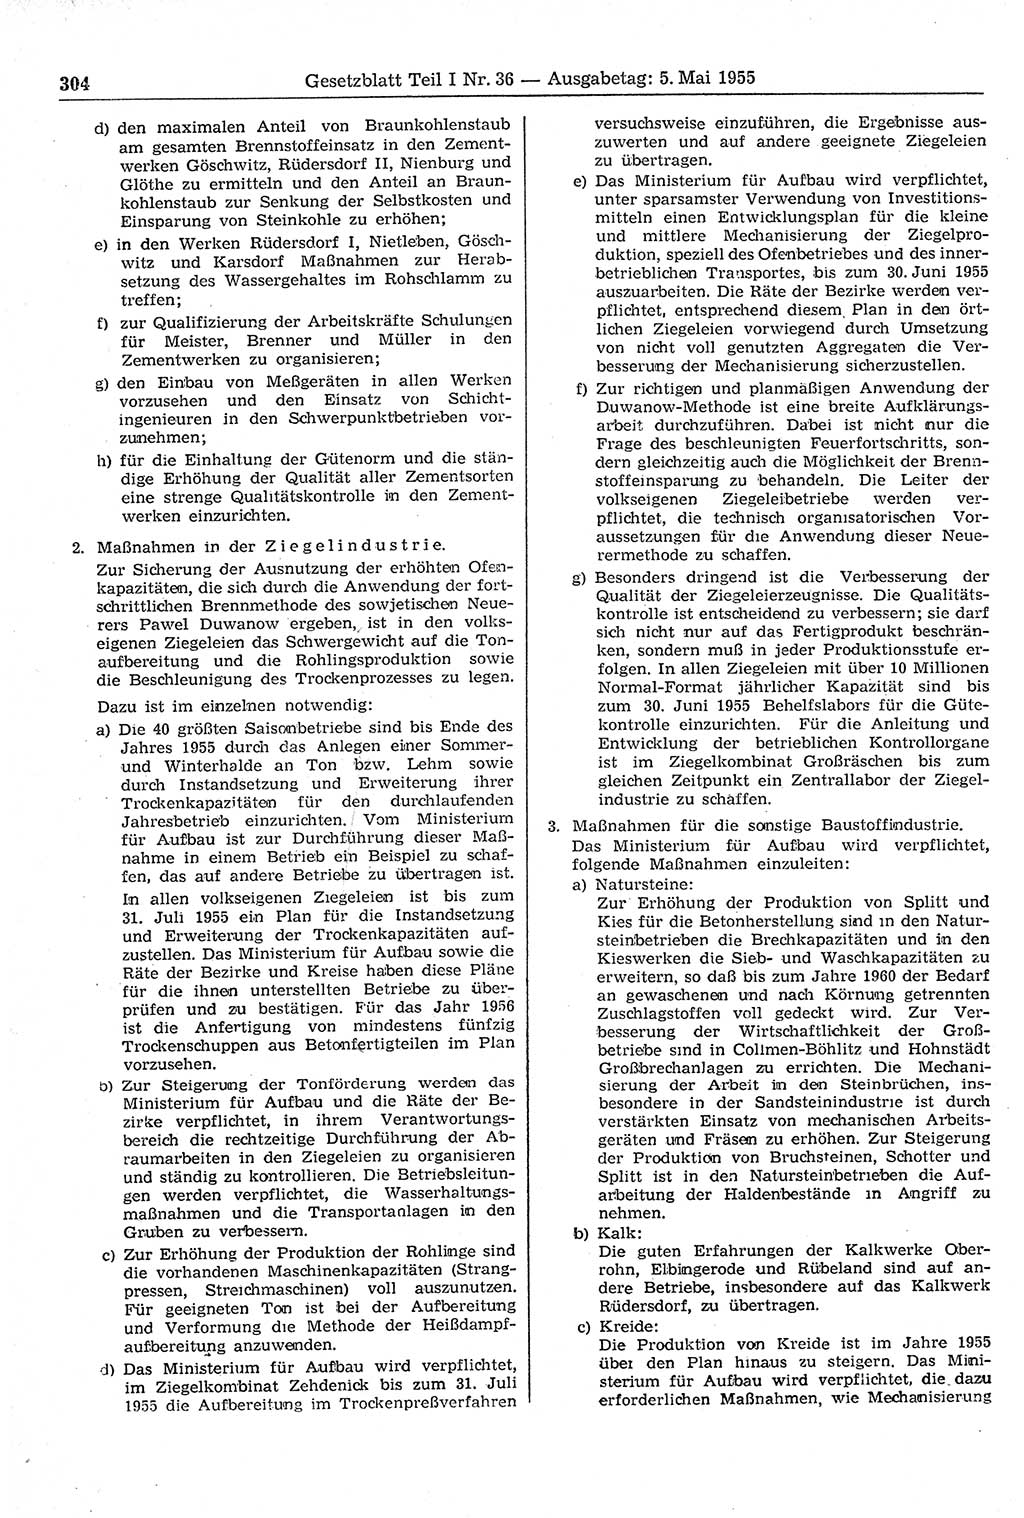 Gesetzblatt (GBl.) der Deutschen Demokratischen Republik (DDR) Teil Ⅰ 1955, Seite 304 (GBl. DDR Ⅰ 1955, S. 304)